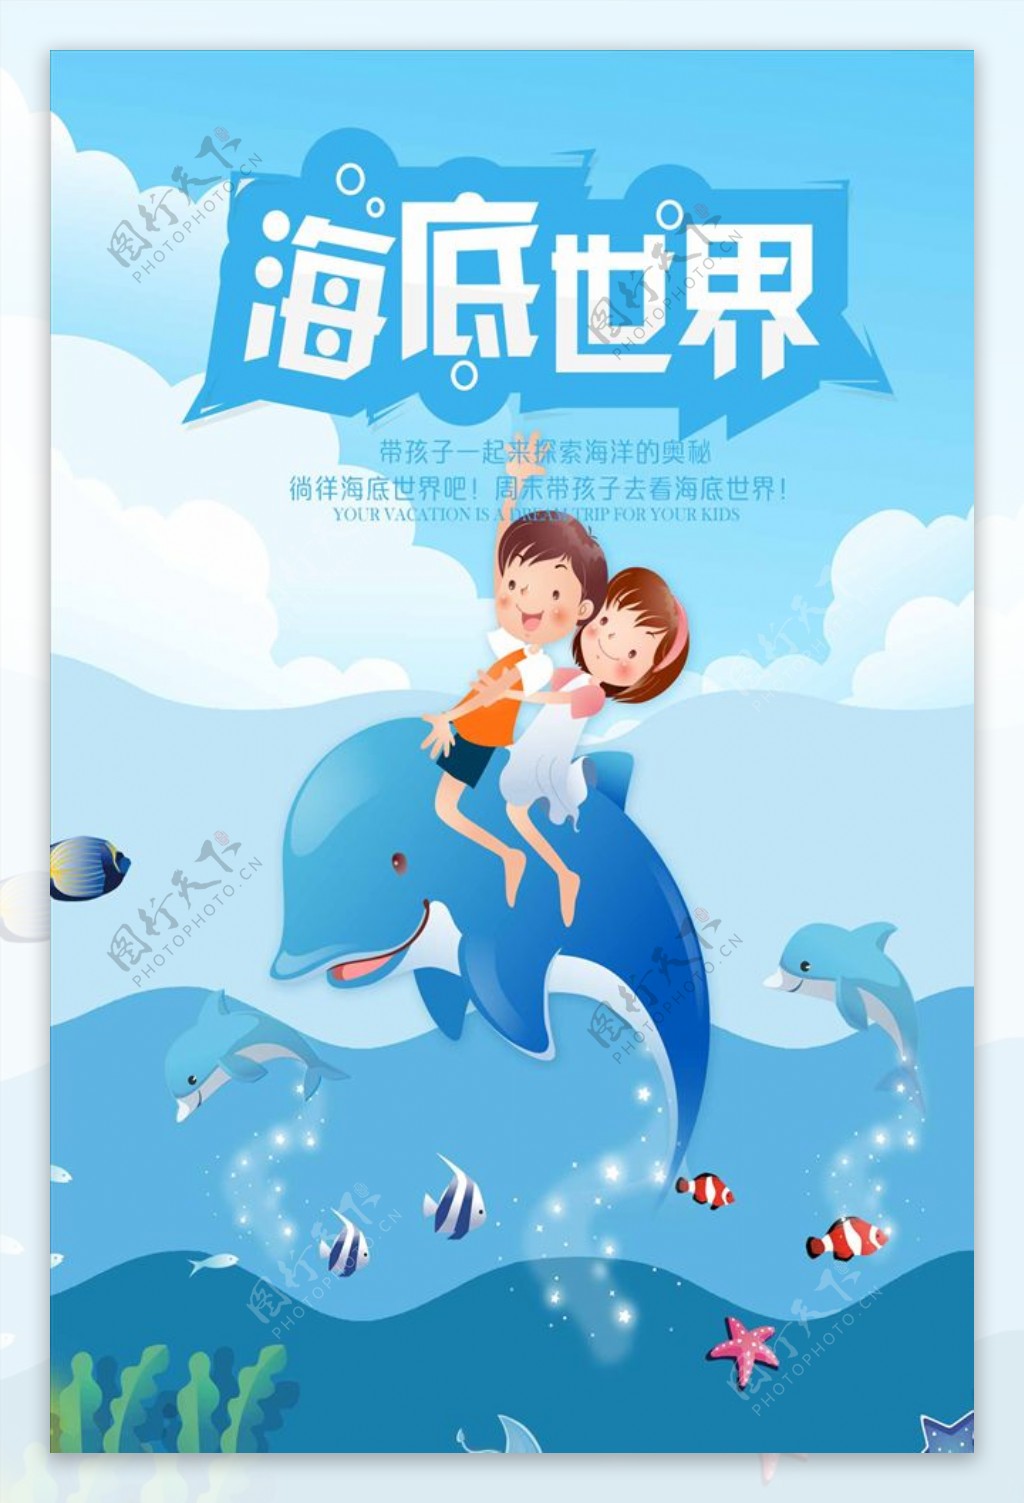 卡通人物海底世界旅游宣传海报